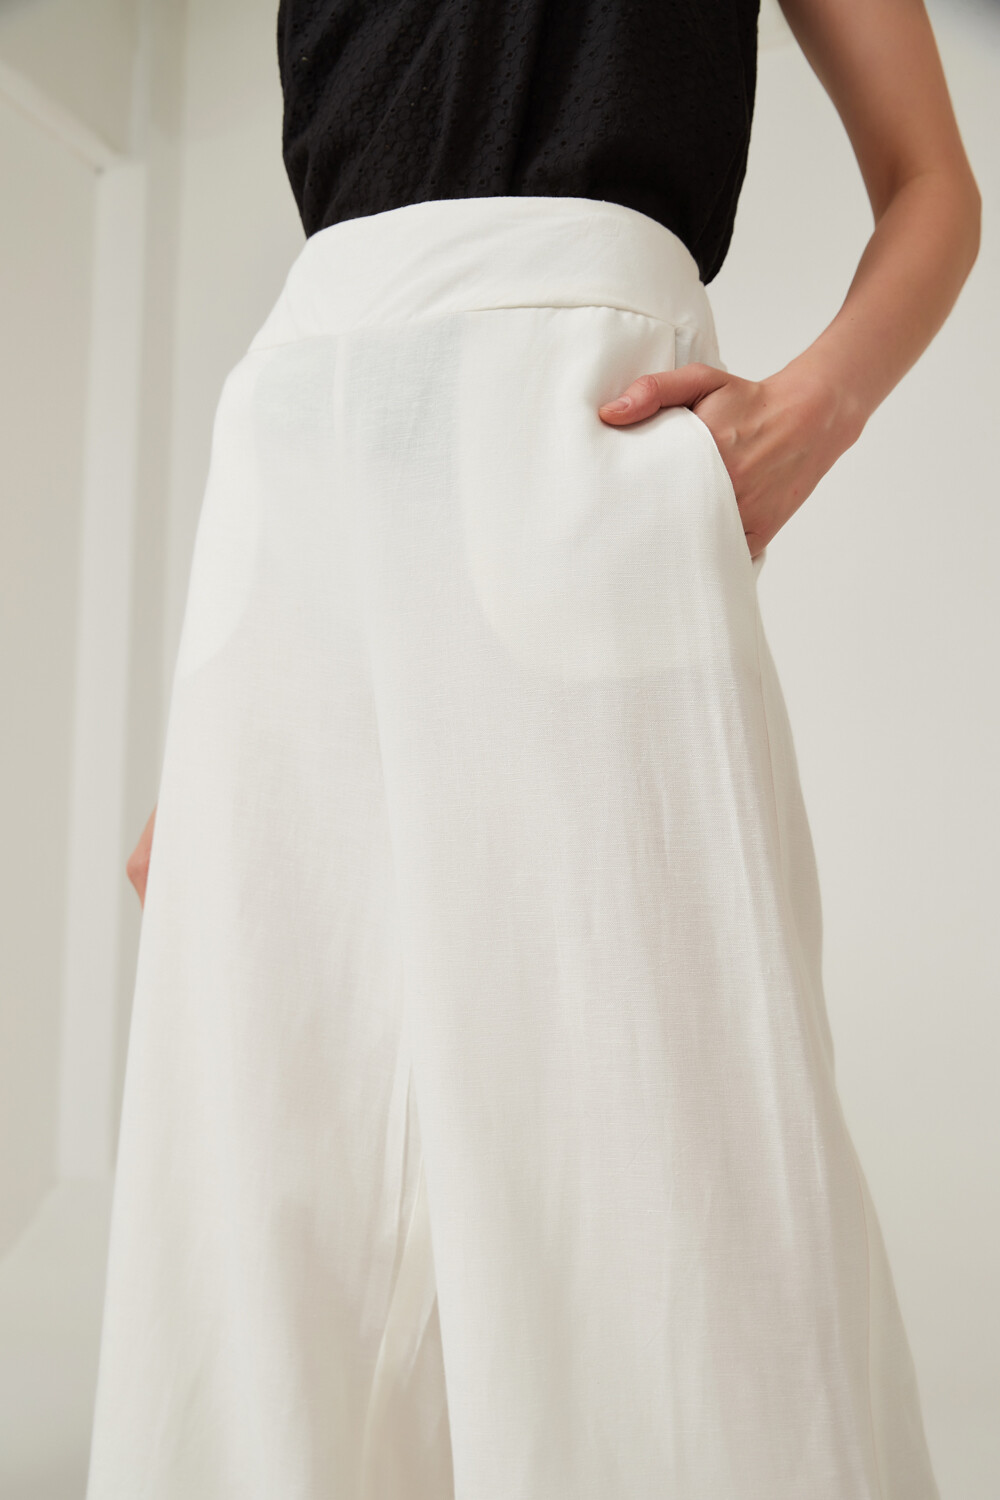 Pantalon Bolsena Marfil / Off White